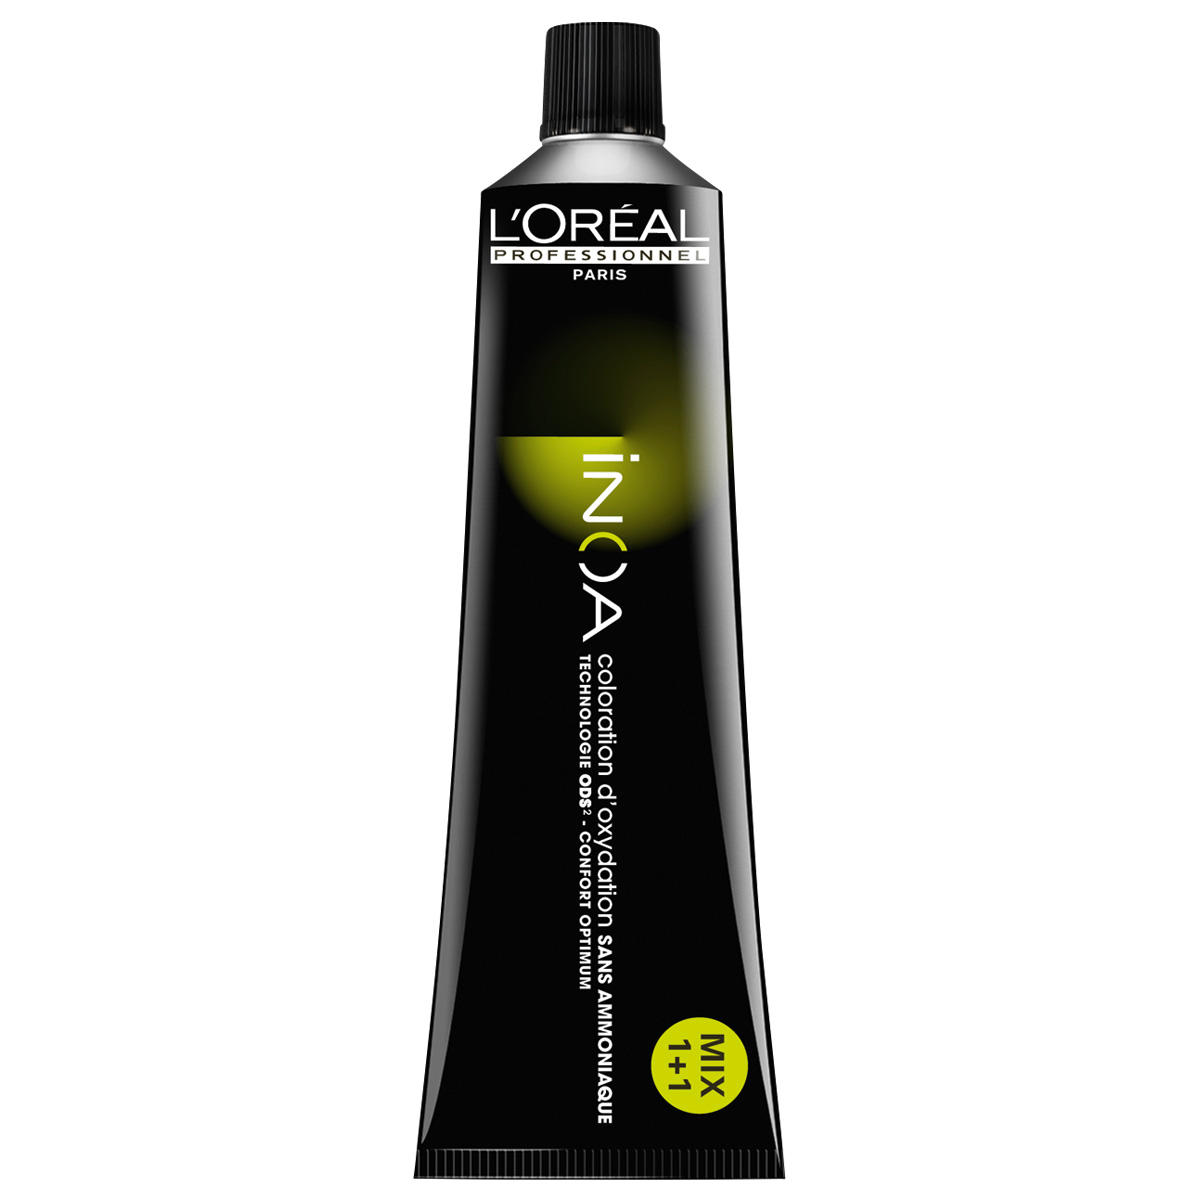 L'Oréal Professionnel Paris Coloration 7.23 Medium Blond Irisé Goud, Tube 60 ml